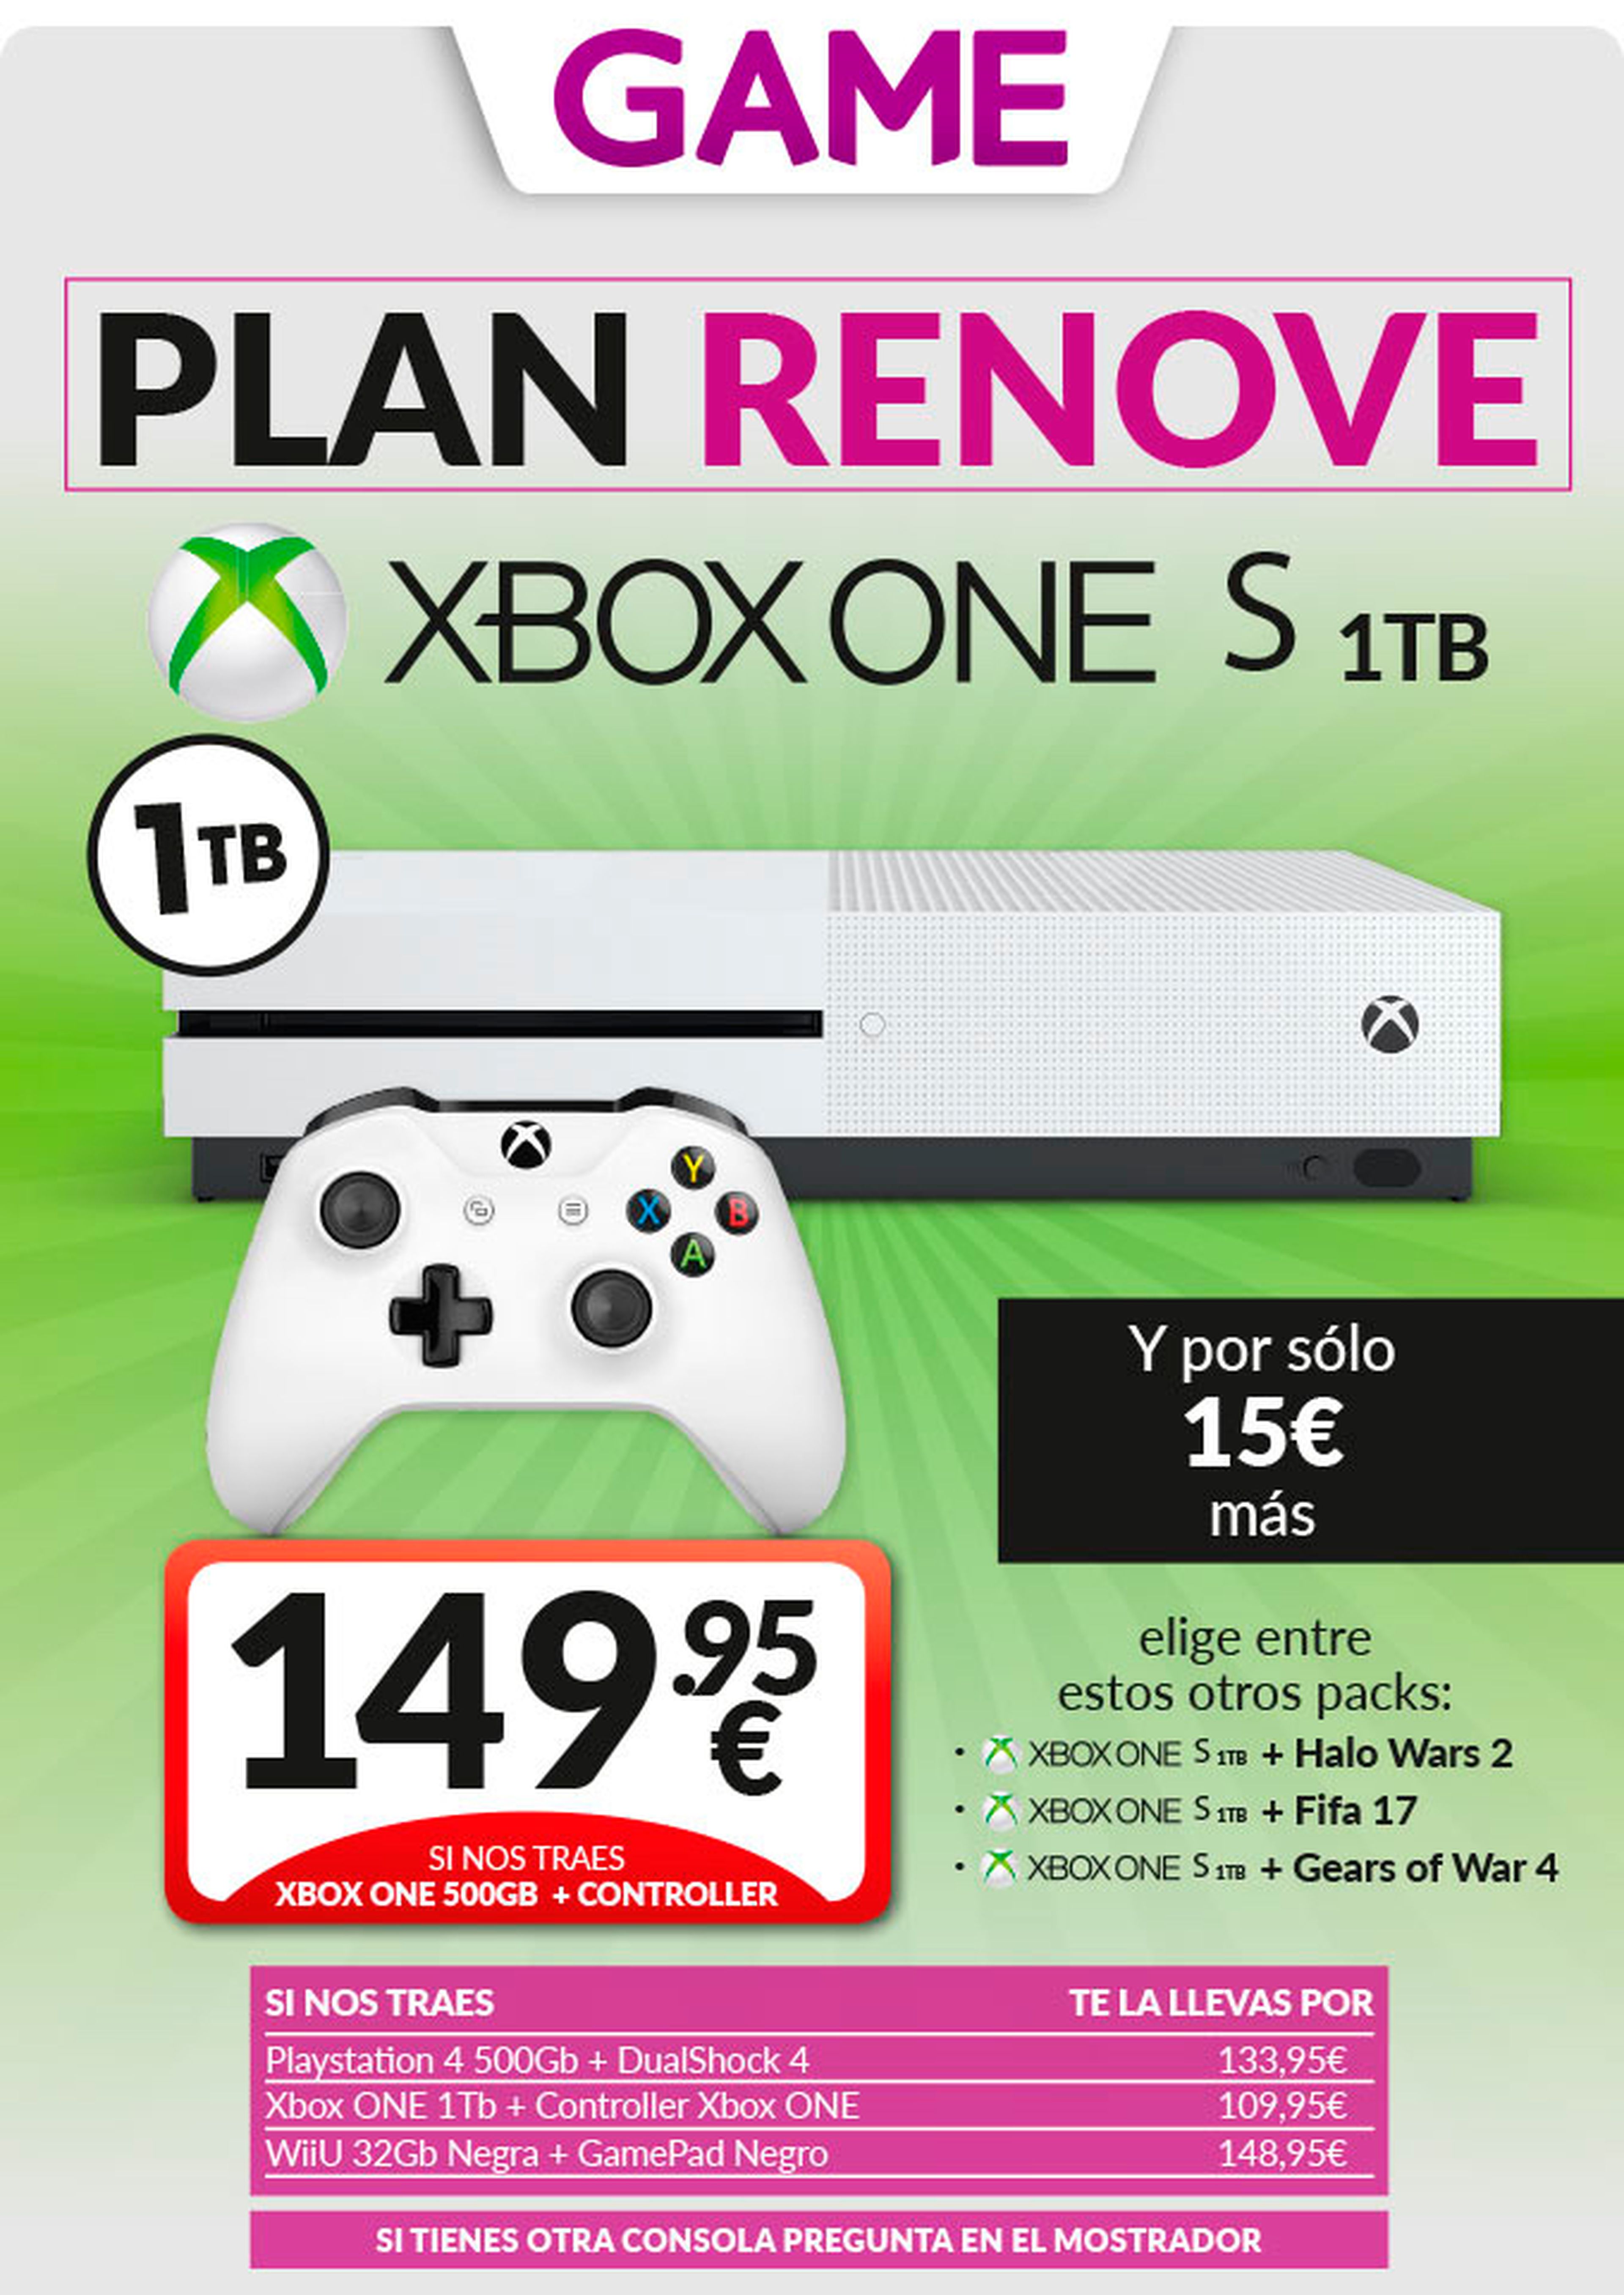 Plan Renove Xbox One S en GAME